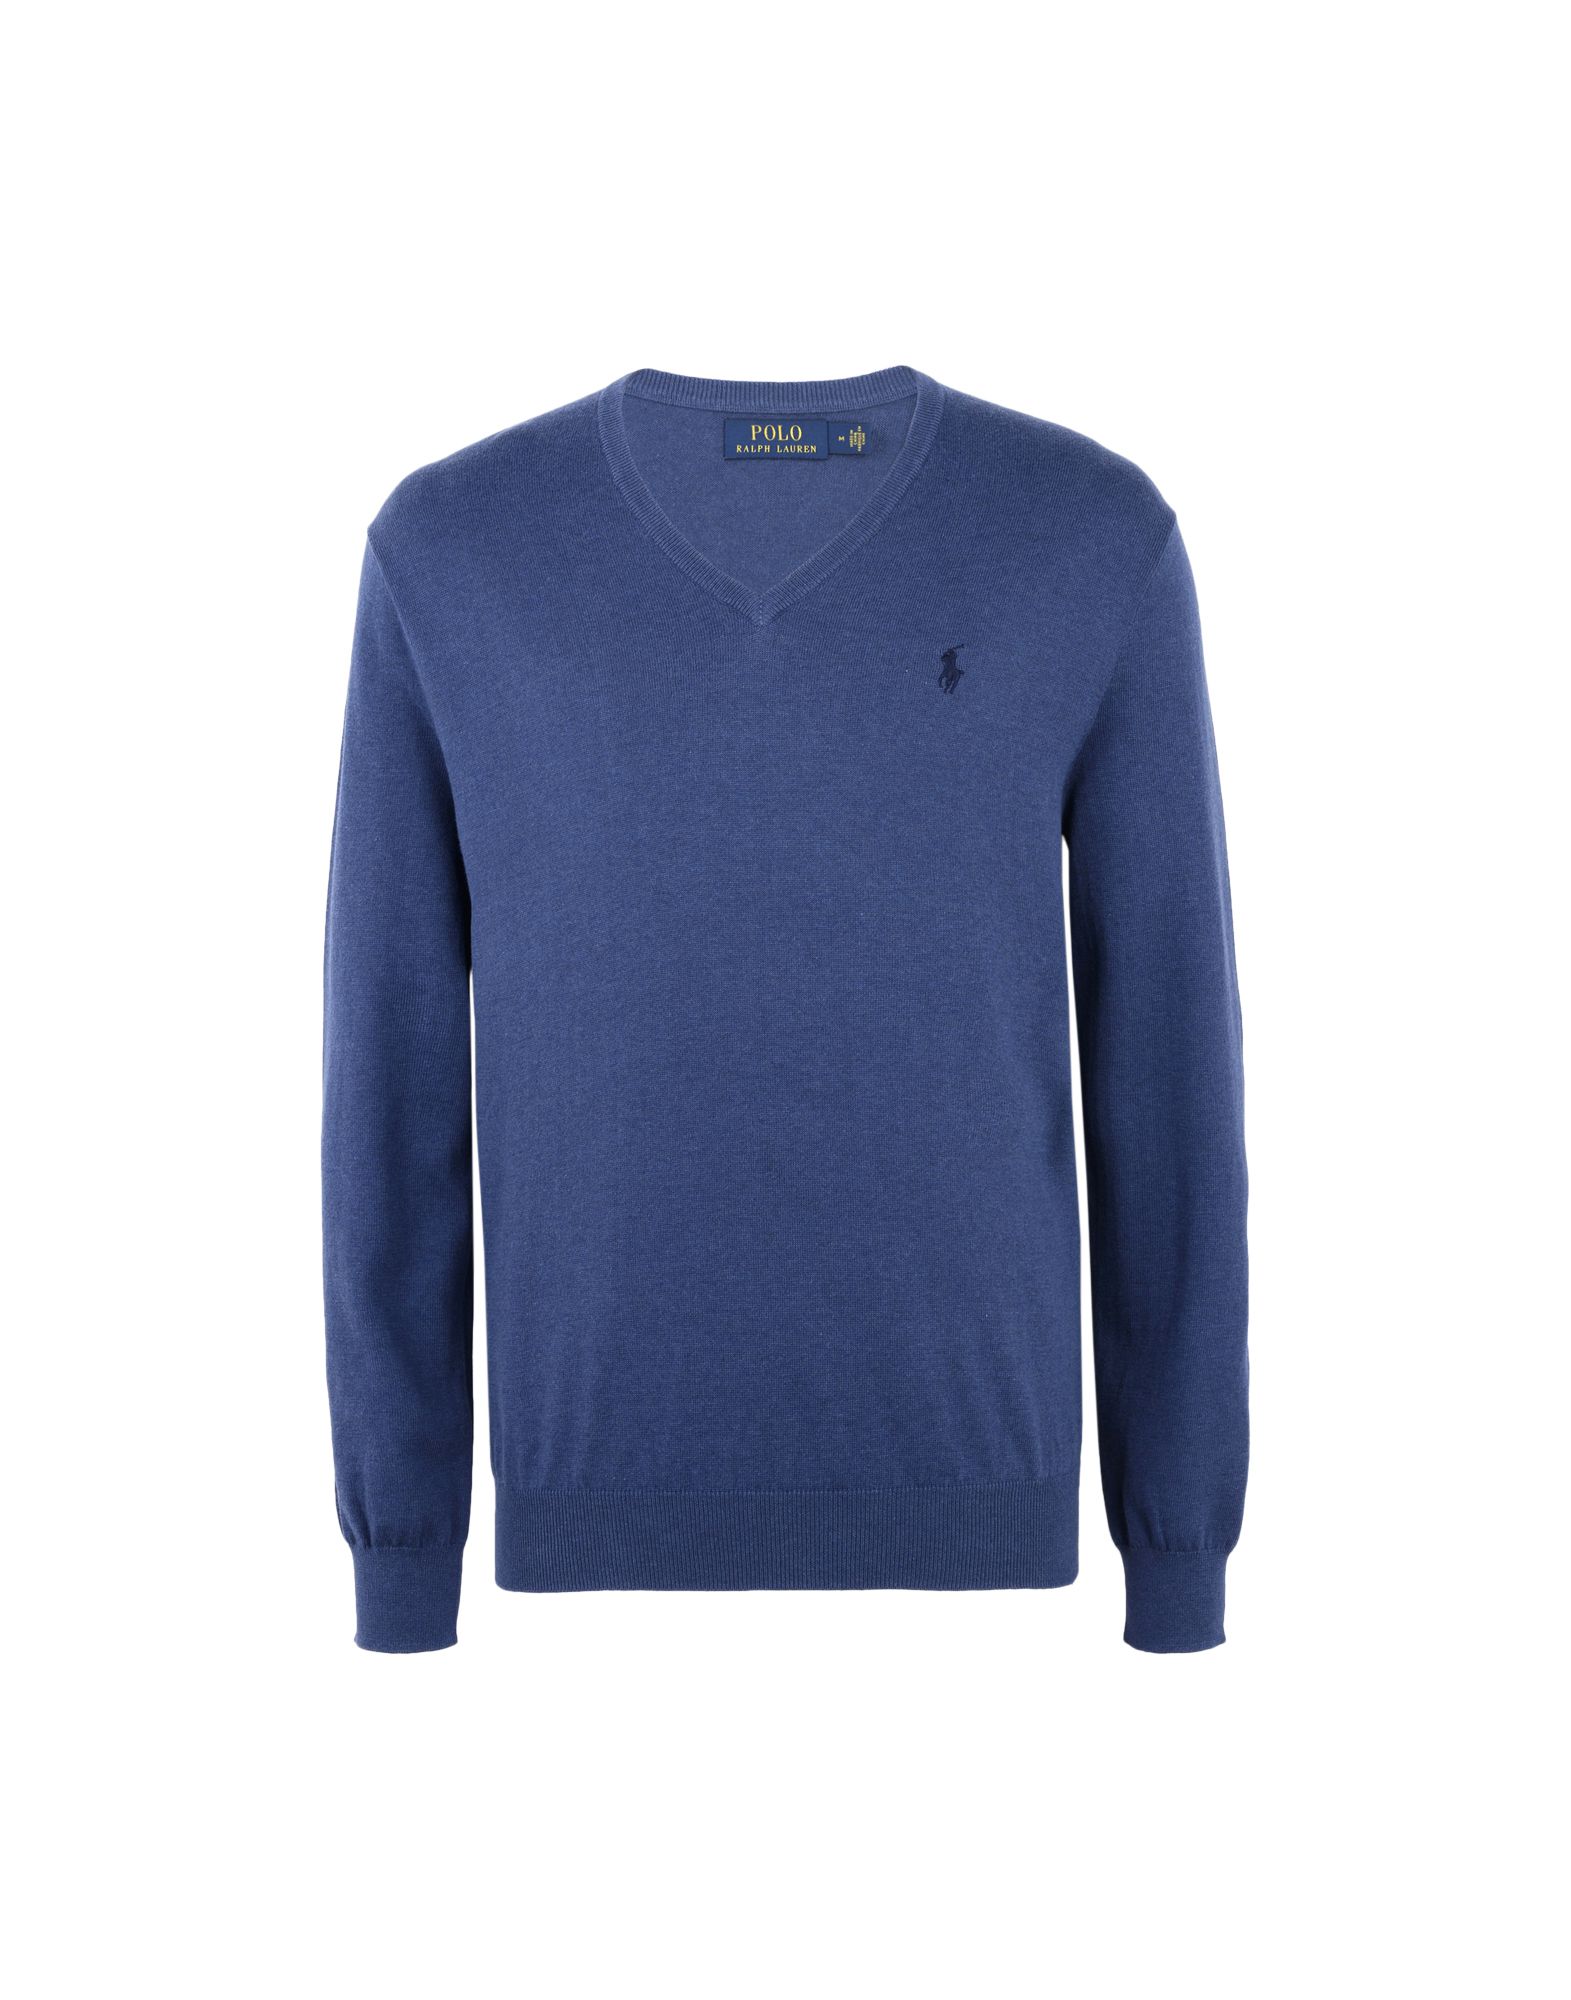 《送料無料》POLO RALPH LAUREN メンズ プルオーバー ブルーグレー S コットン 100% Pima Cotton Sweater